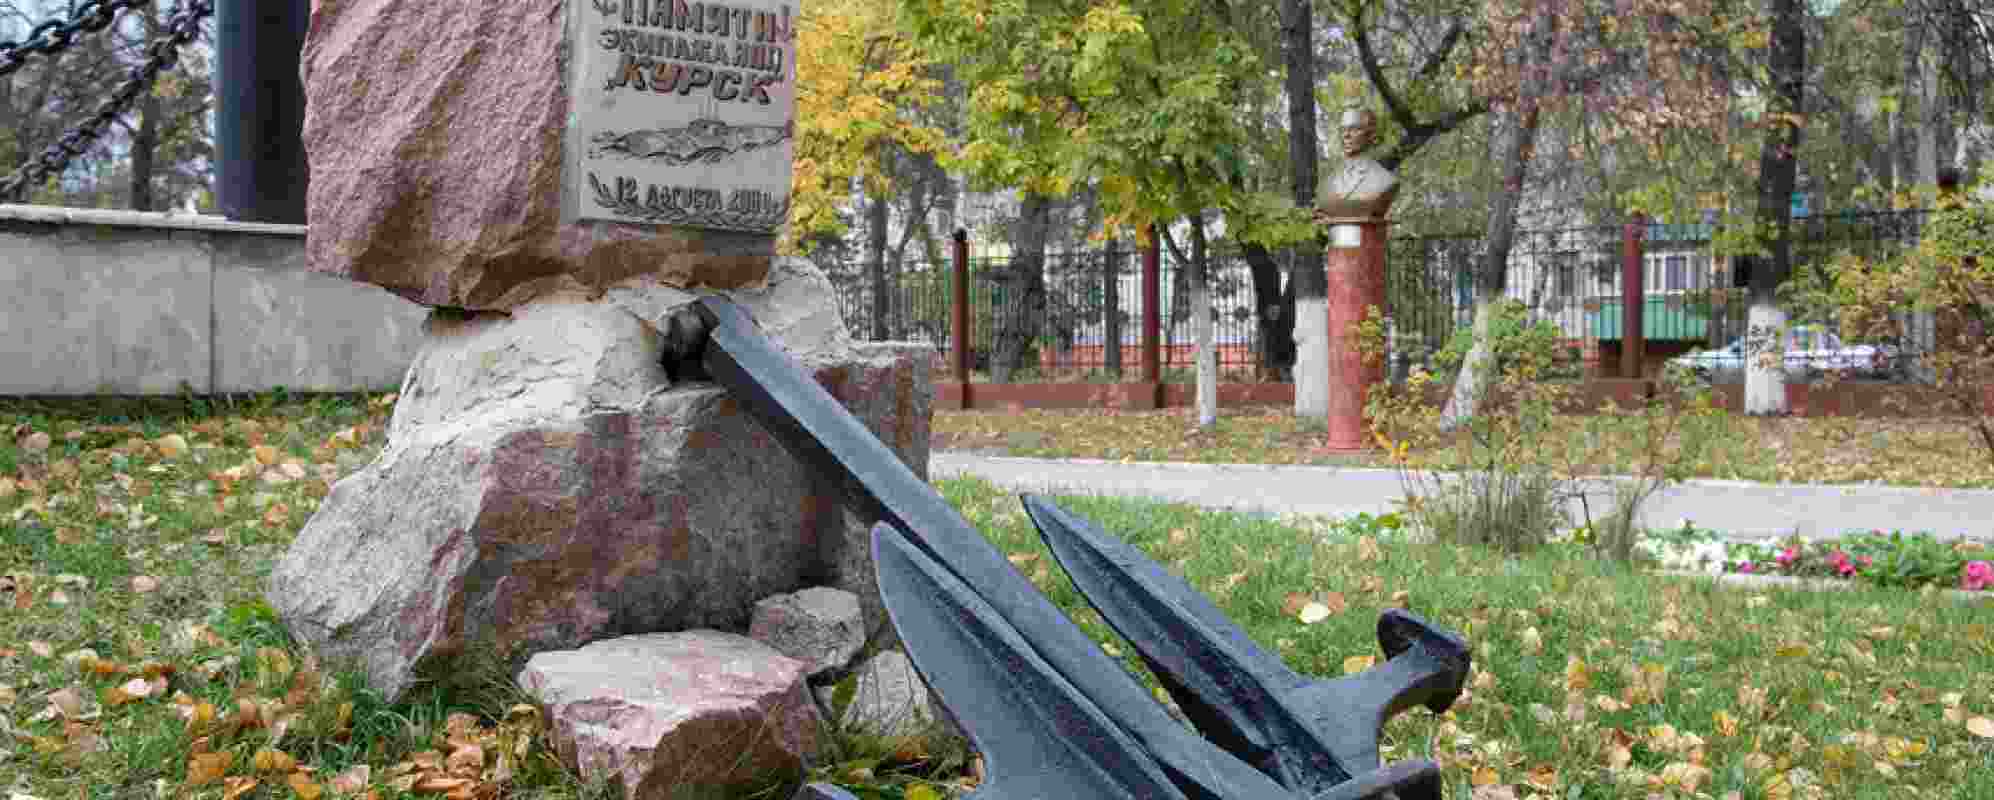 Памятник экипажу подводной лодки «Курск» (Урюпинск)